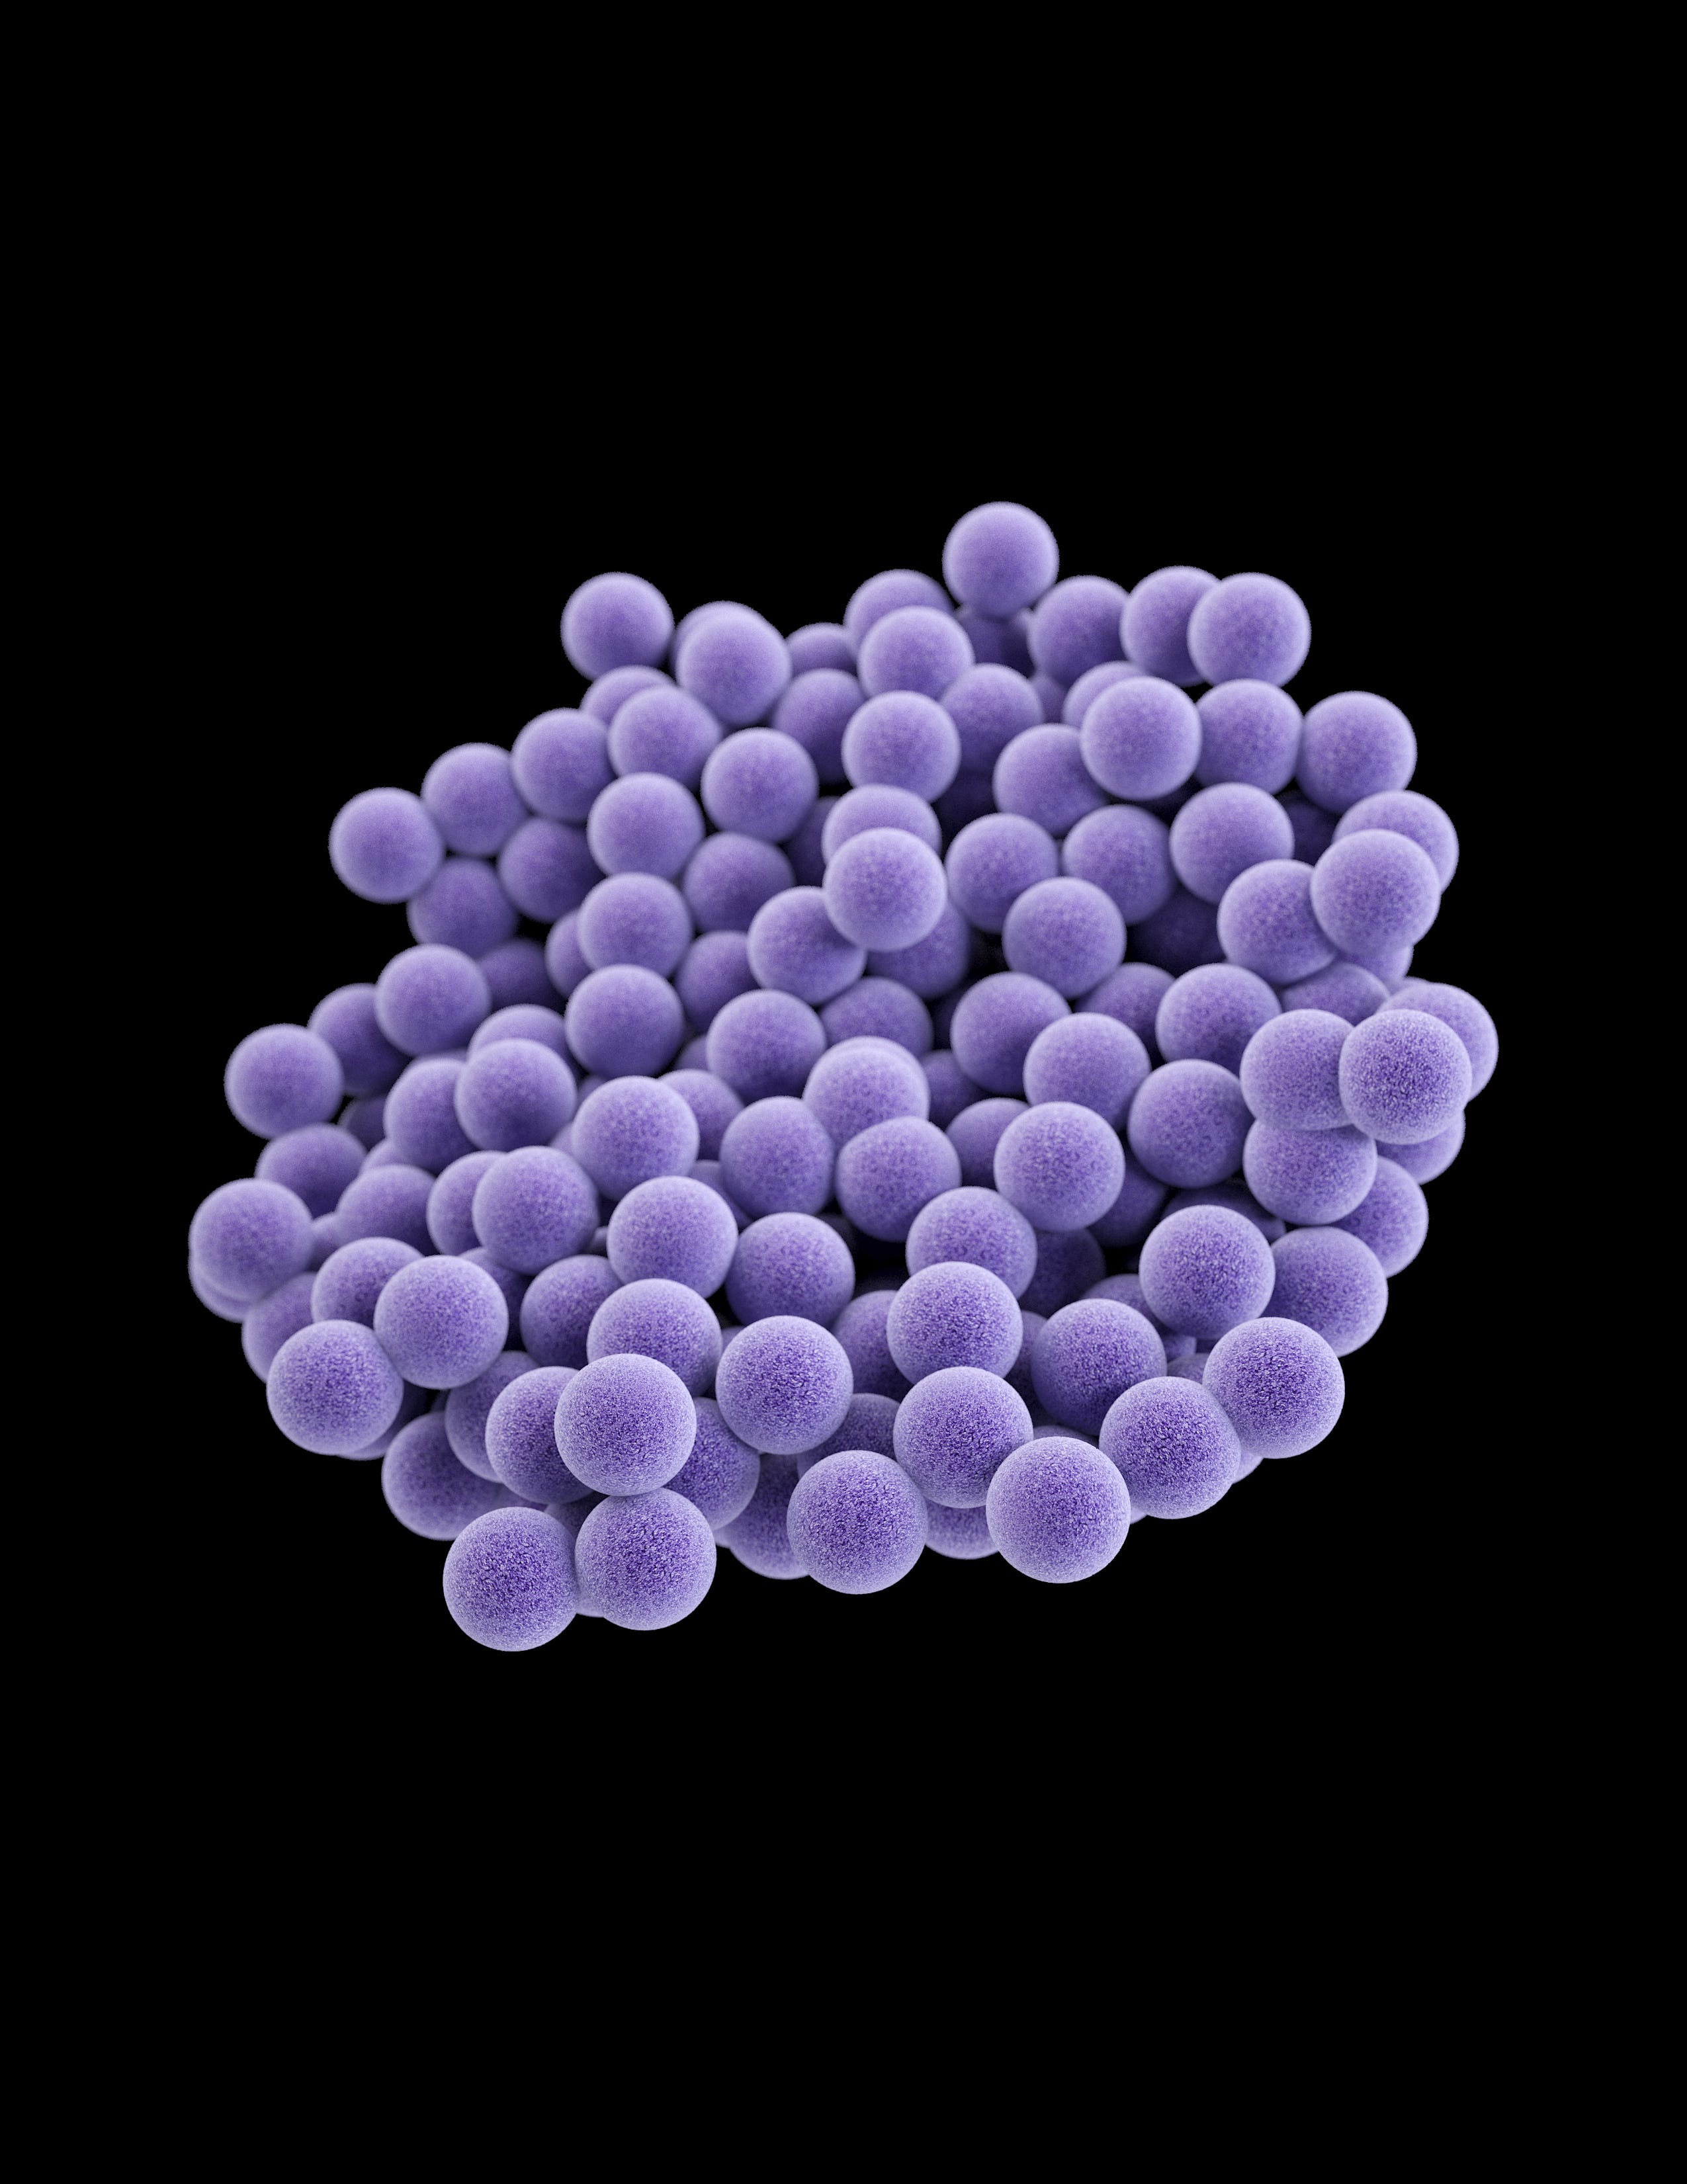 Staphylococcus aureus 3. Метициллин-резистентный золотистый стафилококк. Стафилококкус ауреус.